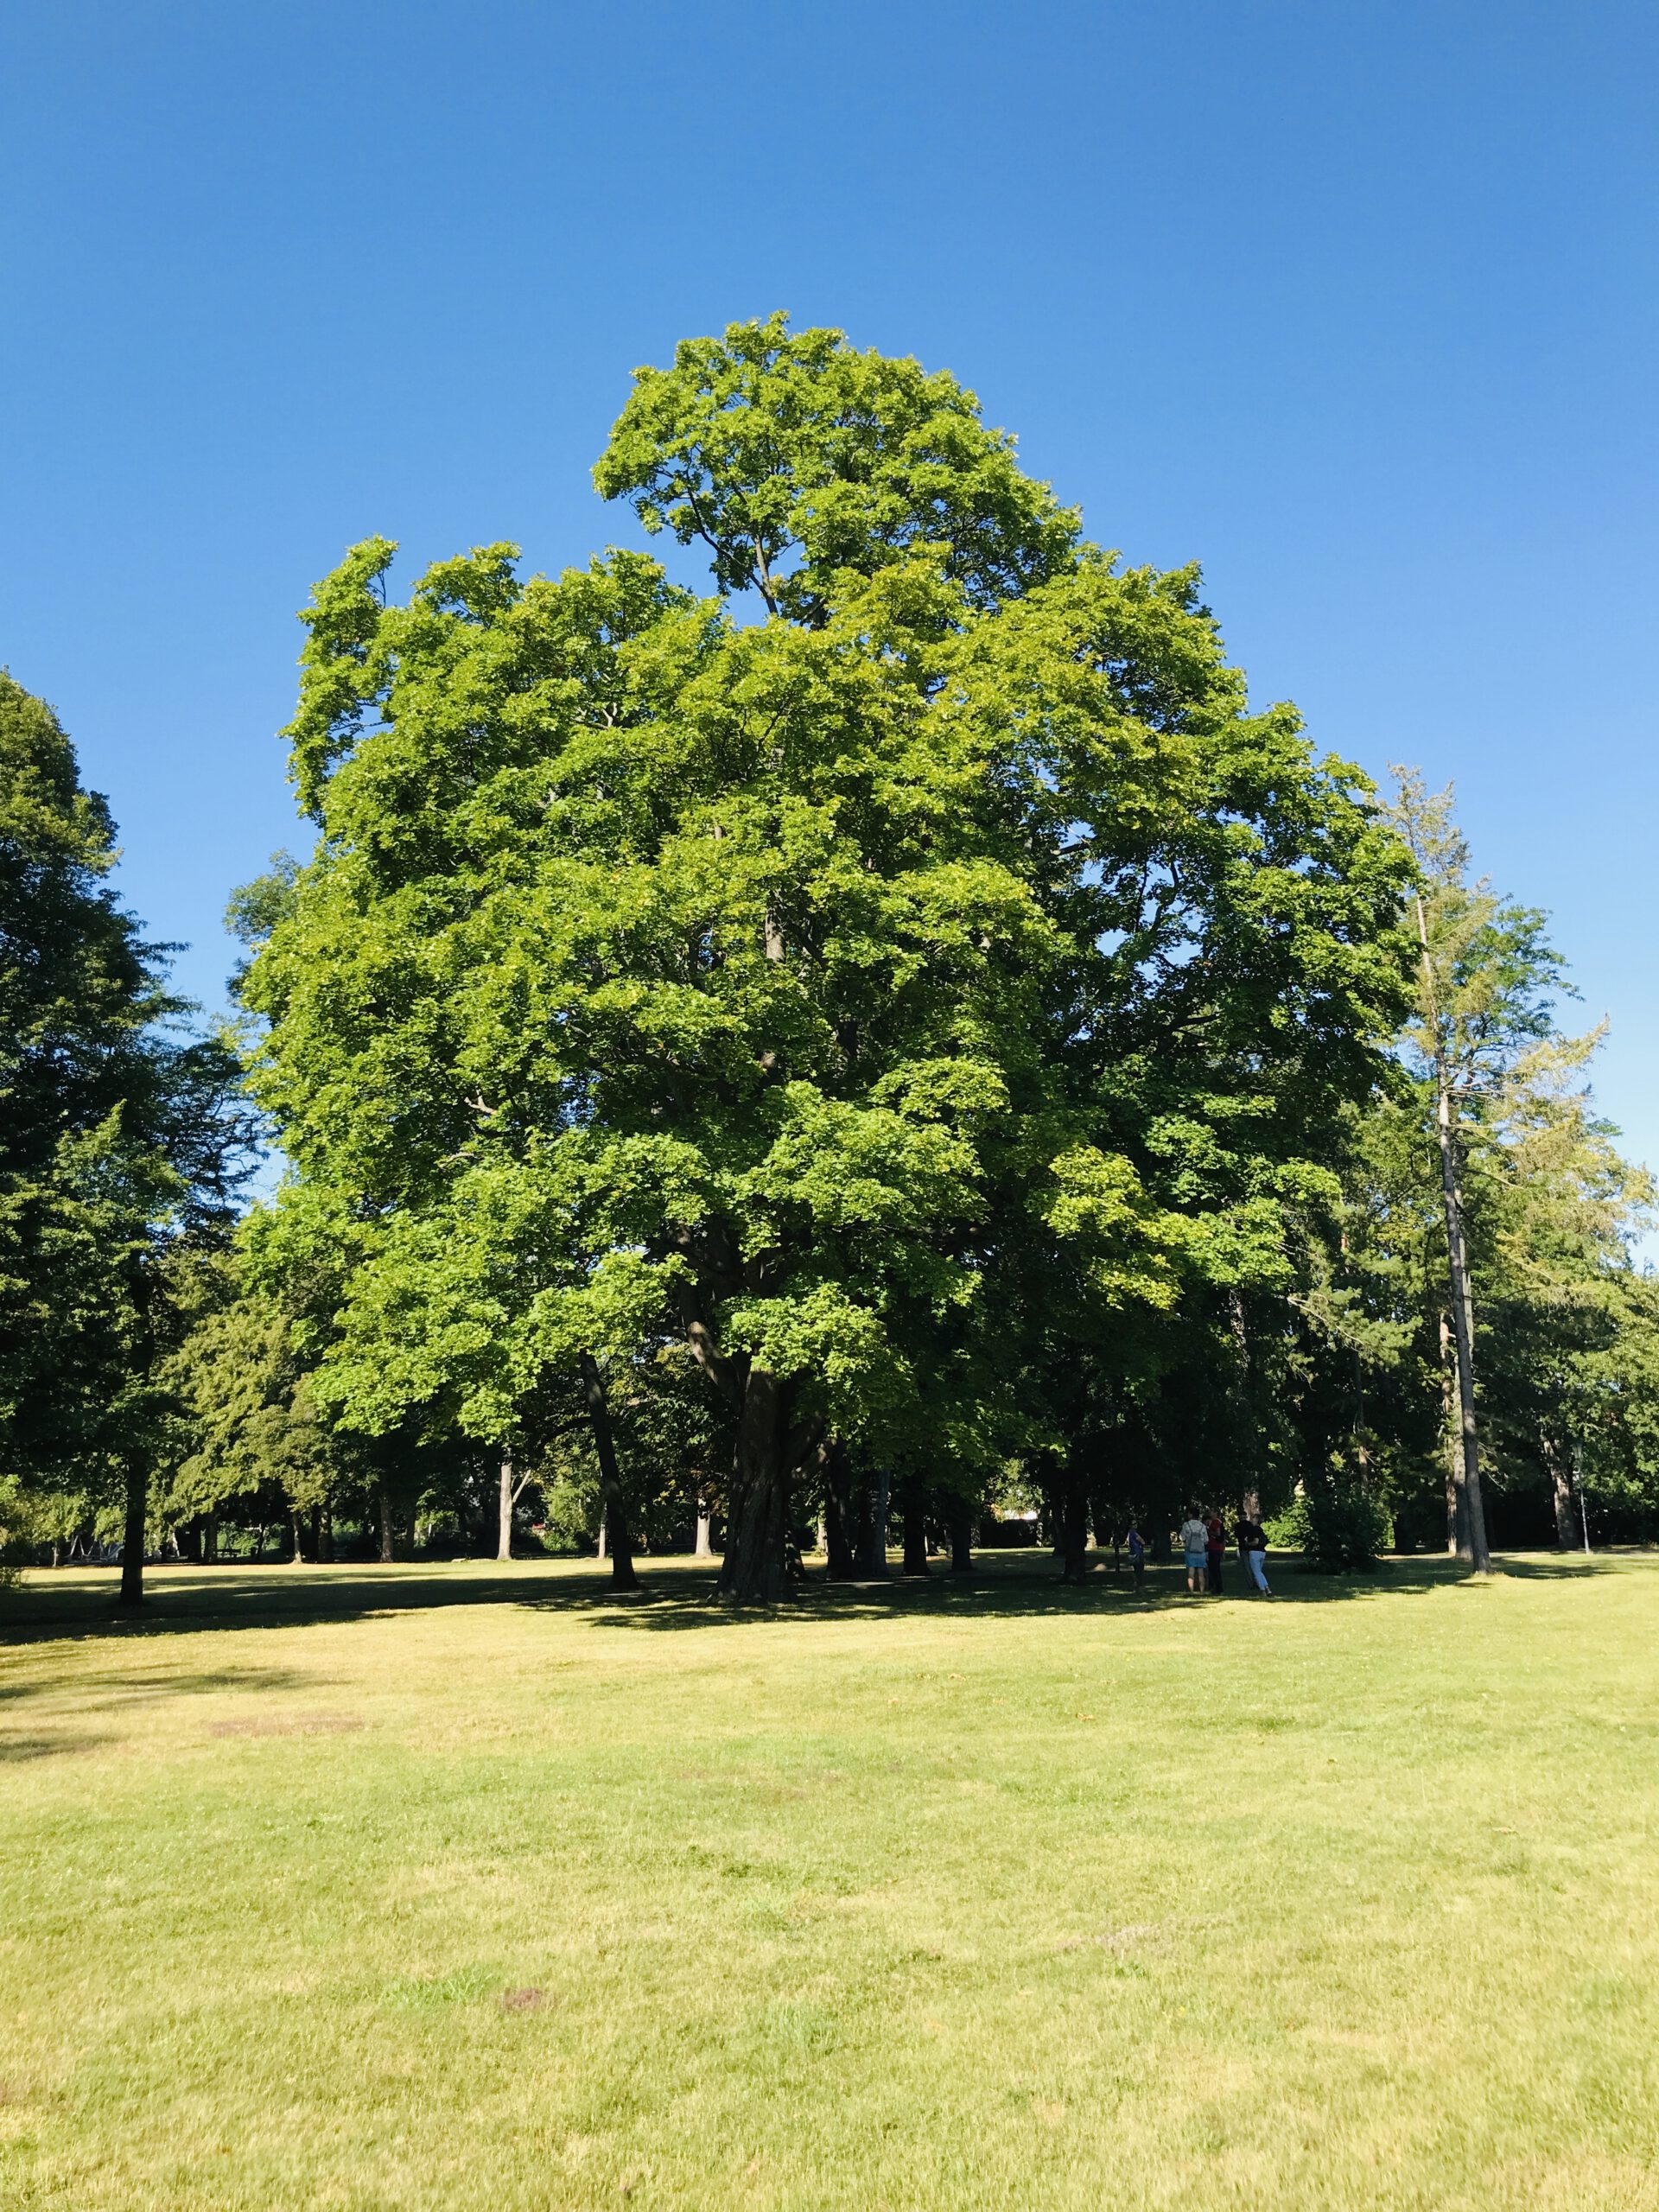 Viele Bäume im Schlossgarten sind geschädigt, meist durch die zunehmende Trockenheit. Dieser Ahorn jedoch zählt zu den noch "voll vitalen" Bäumen ohne erkennbare Schwächen.